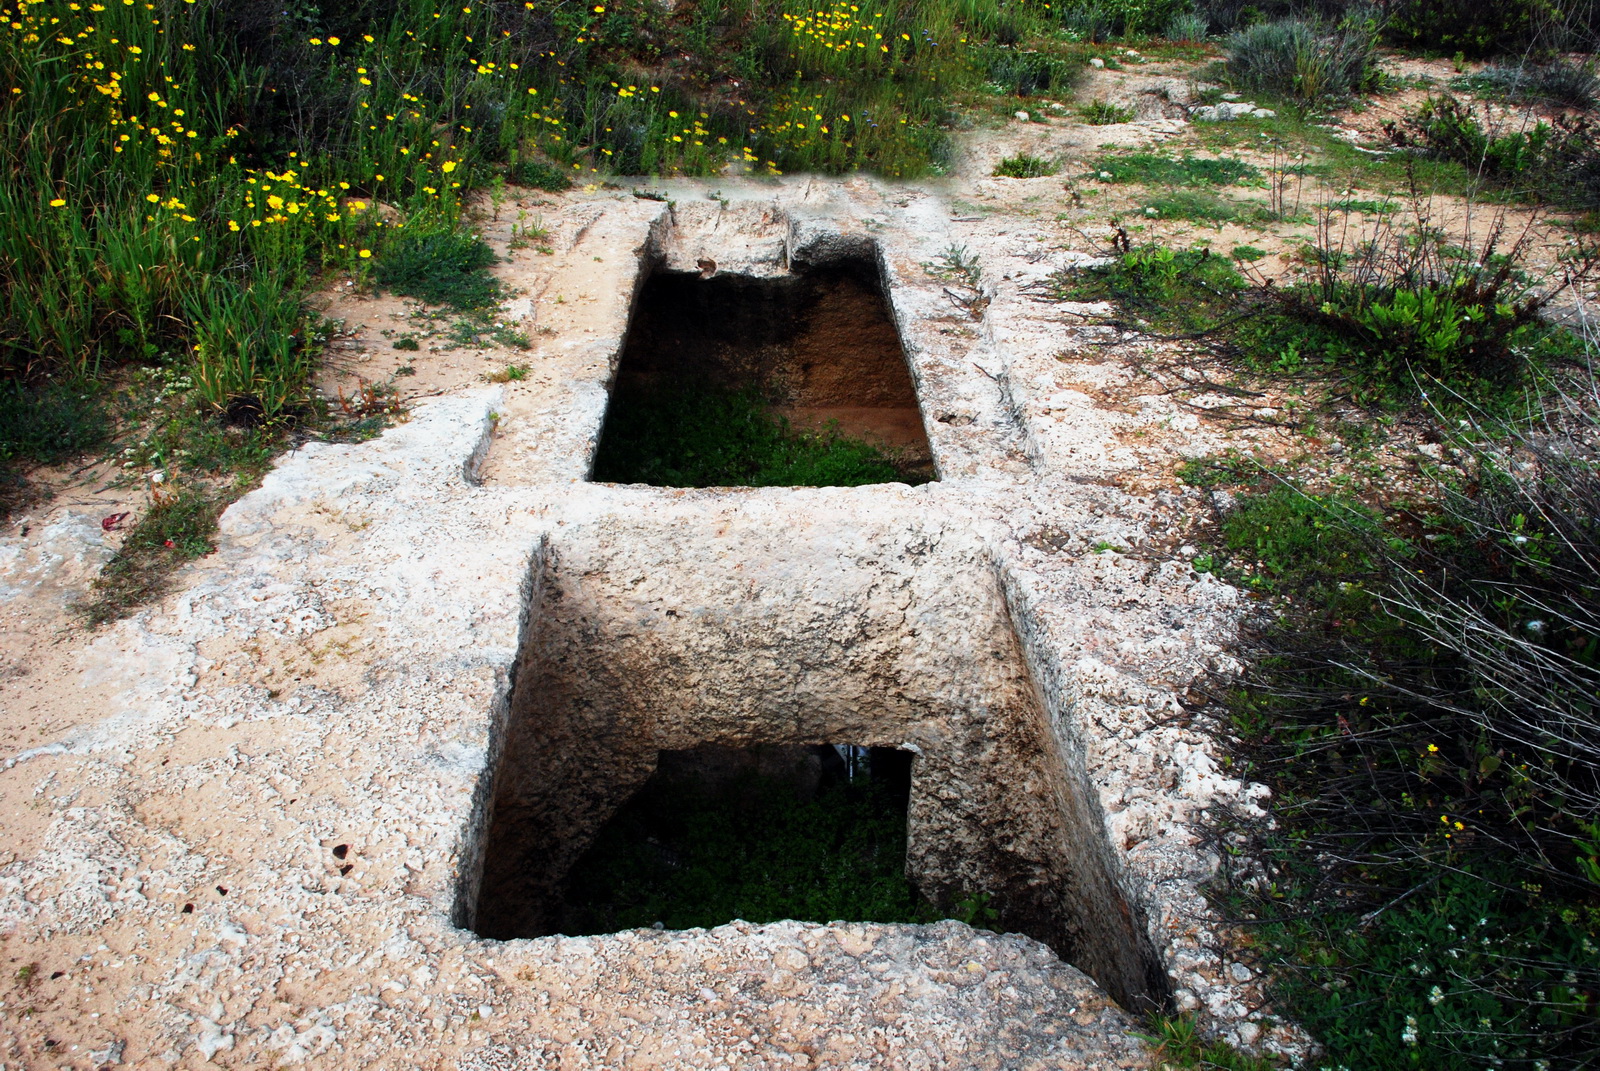 אכזיב - קבר פיניקי אופייני חצוב בסלע הכורכר, ובנוי מתא כניסה, וממנו פתח לתא הקבורה שהיה מקורה